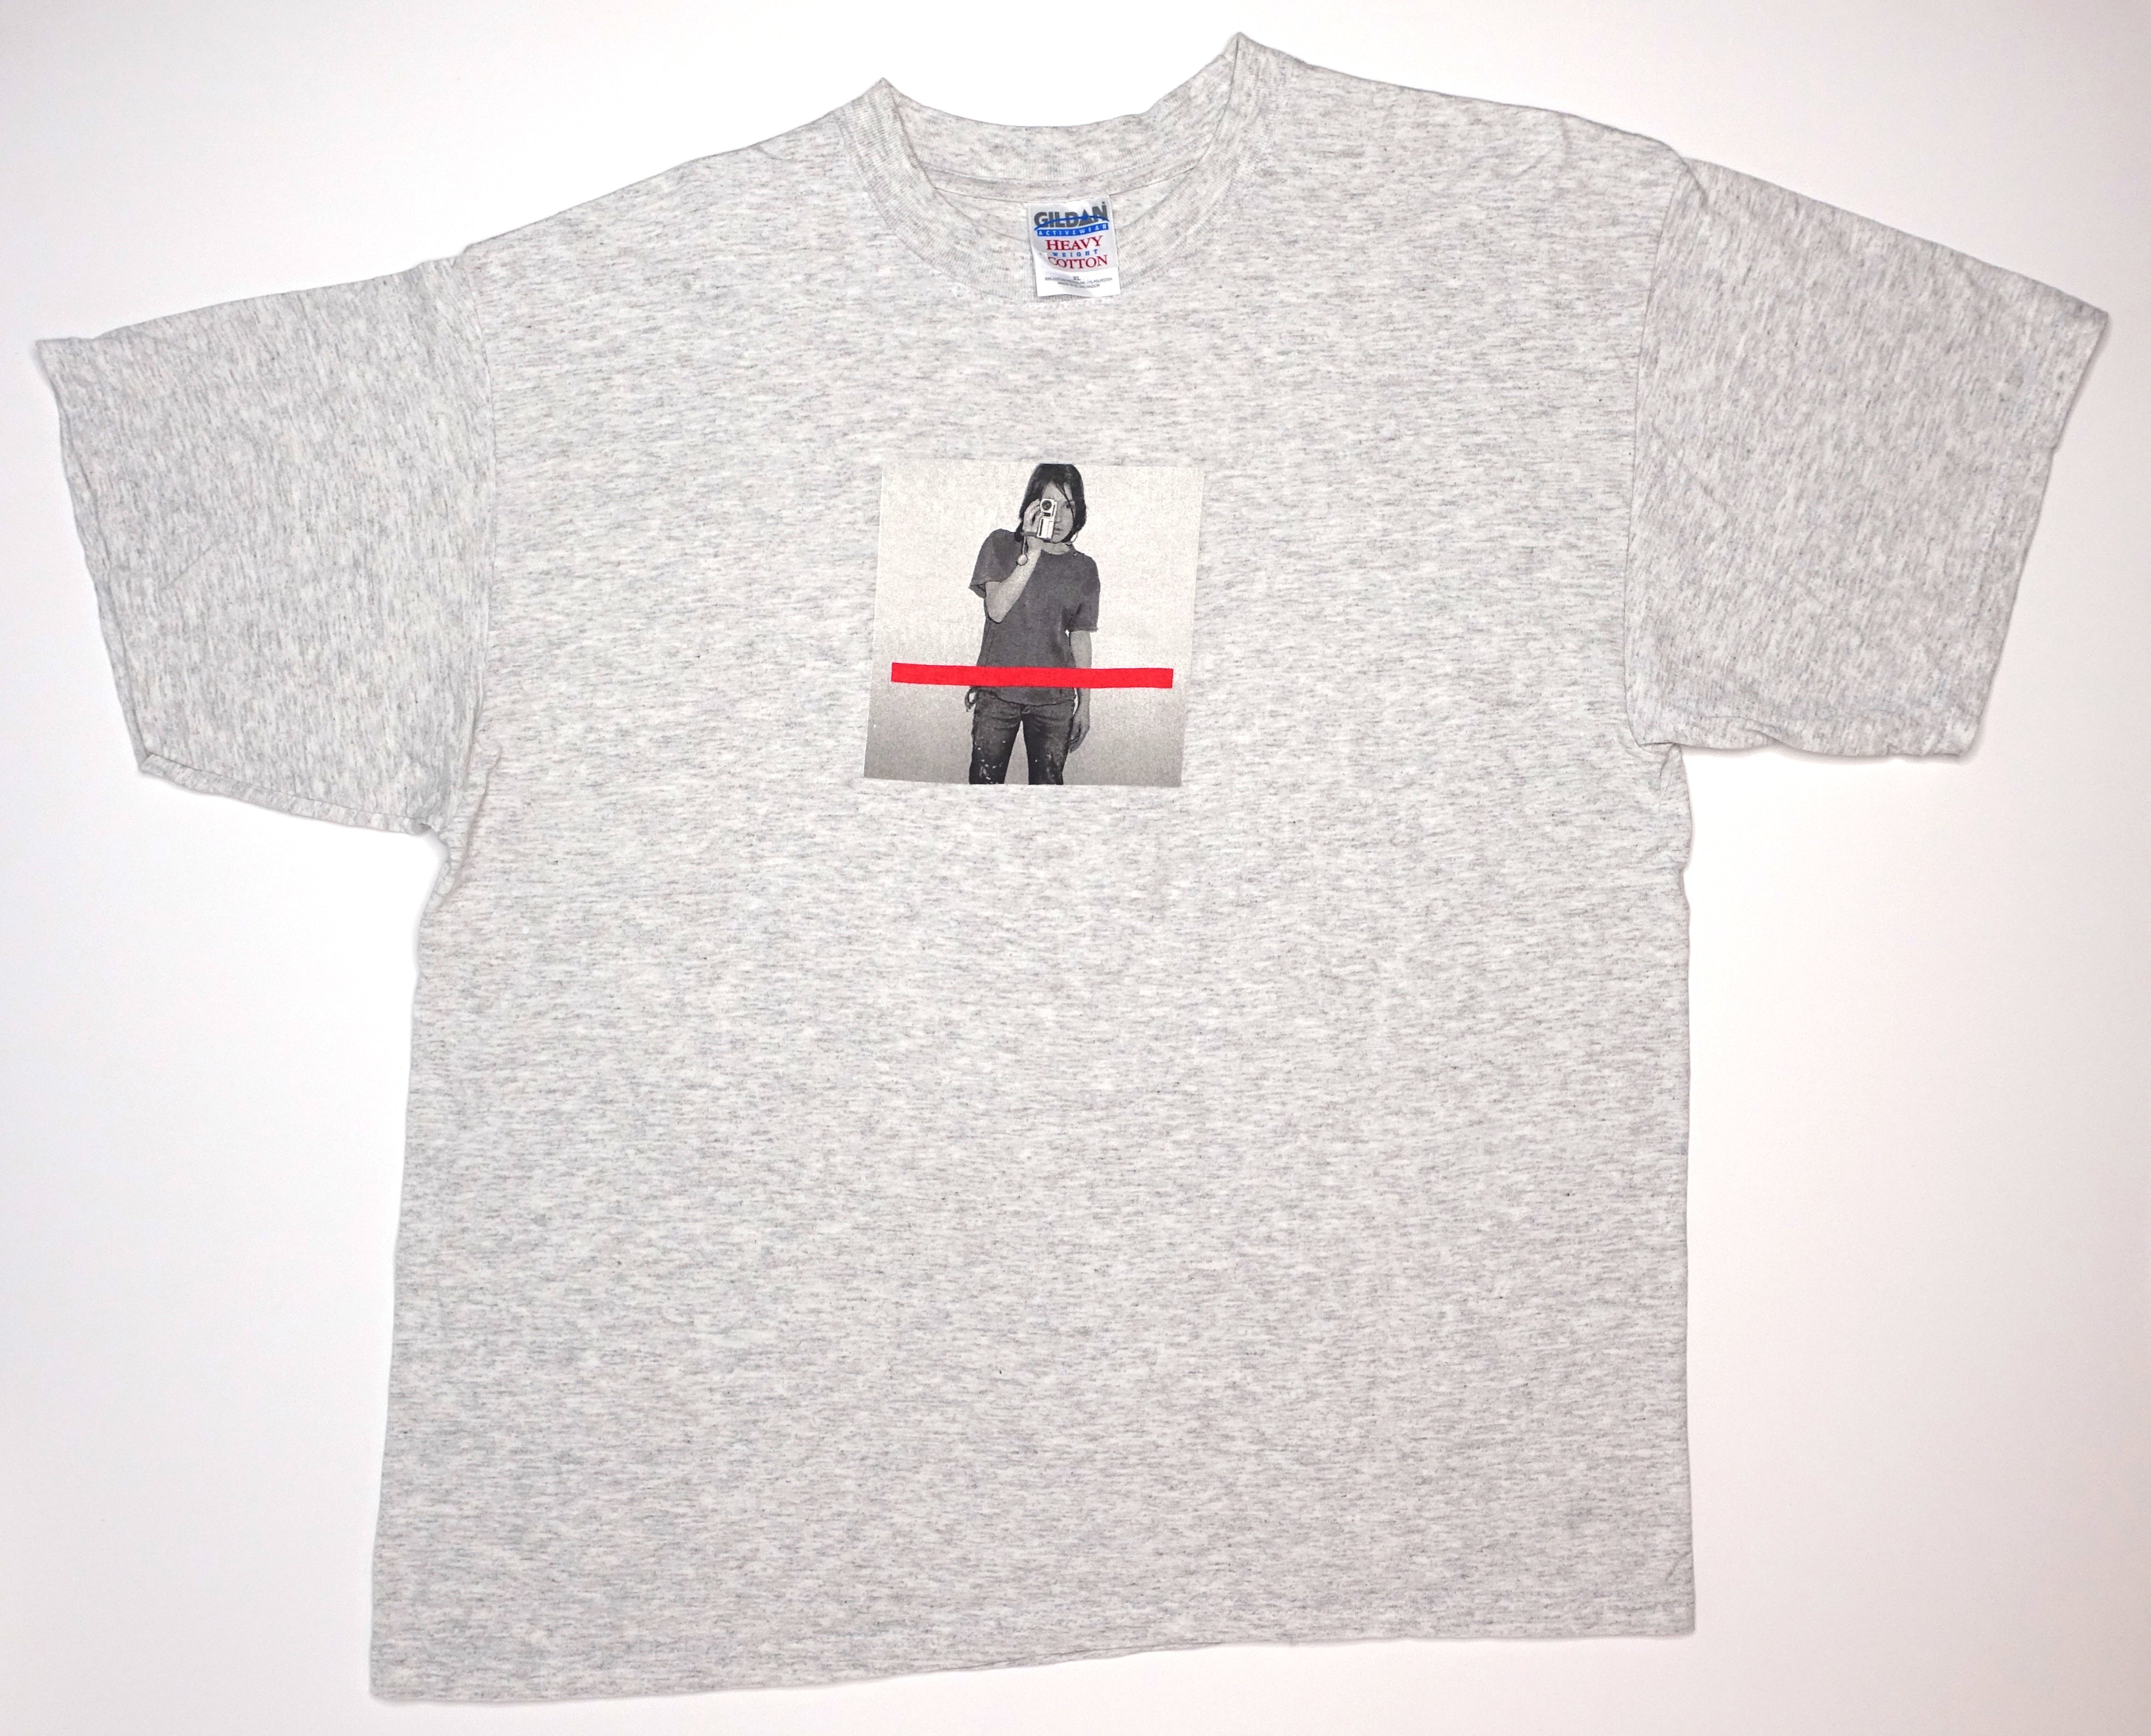 New Order - Get Ready 2001 Tour Shirt Size XL